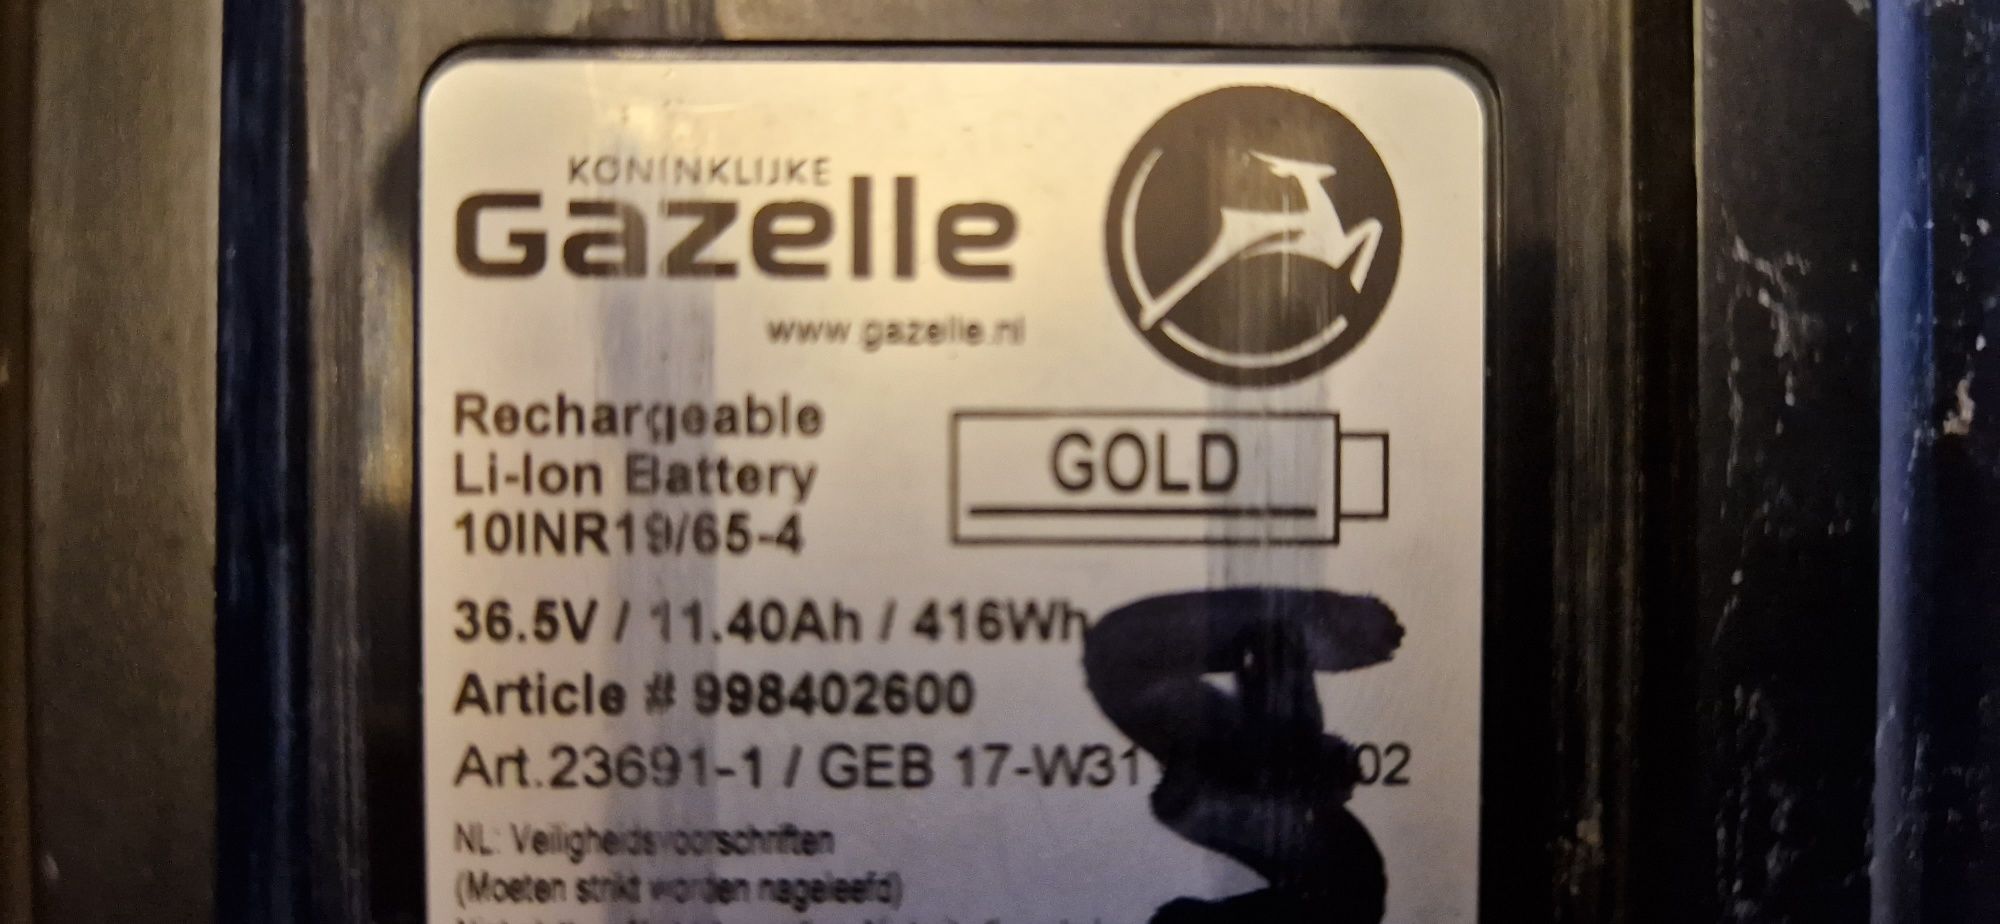 Gazelle Orange C7 bateria GOLD